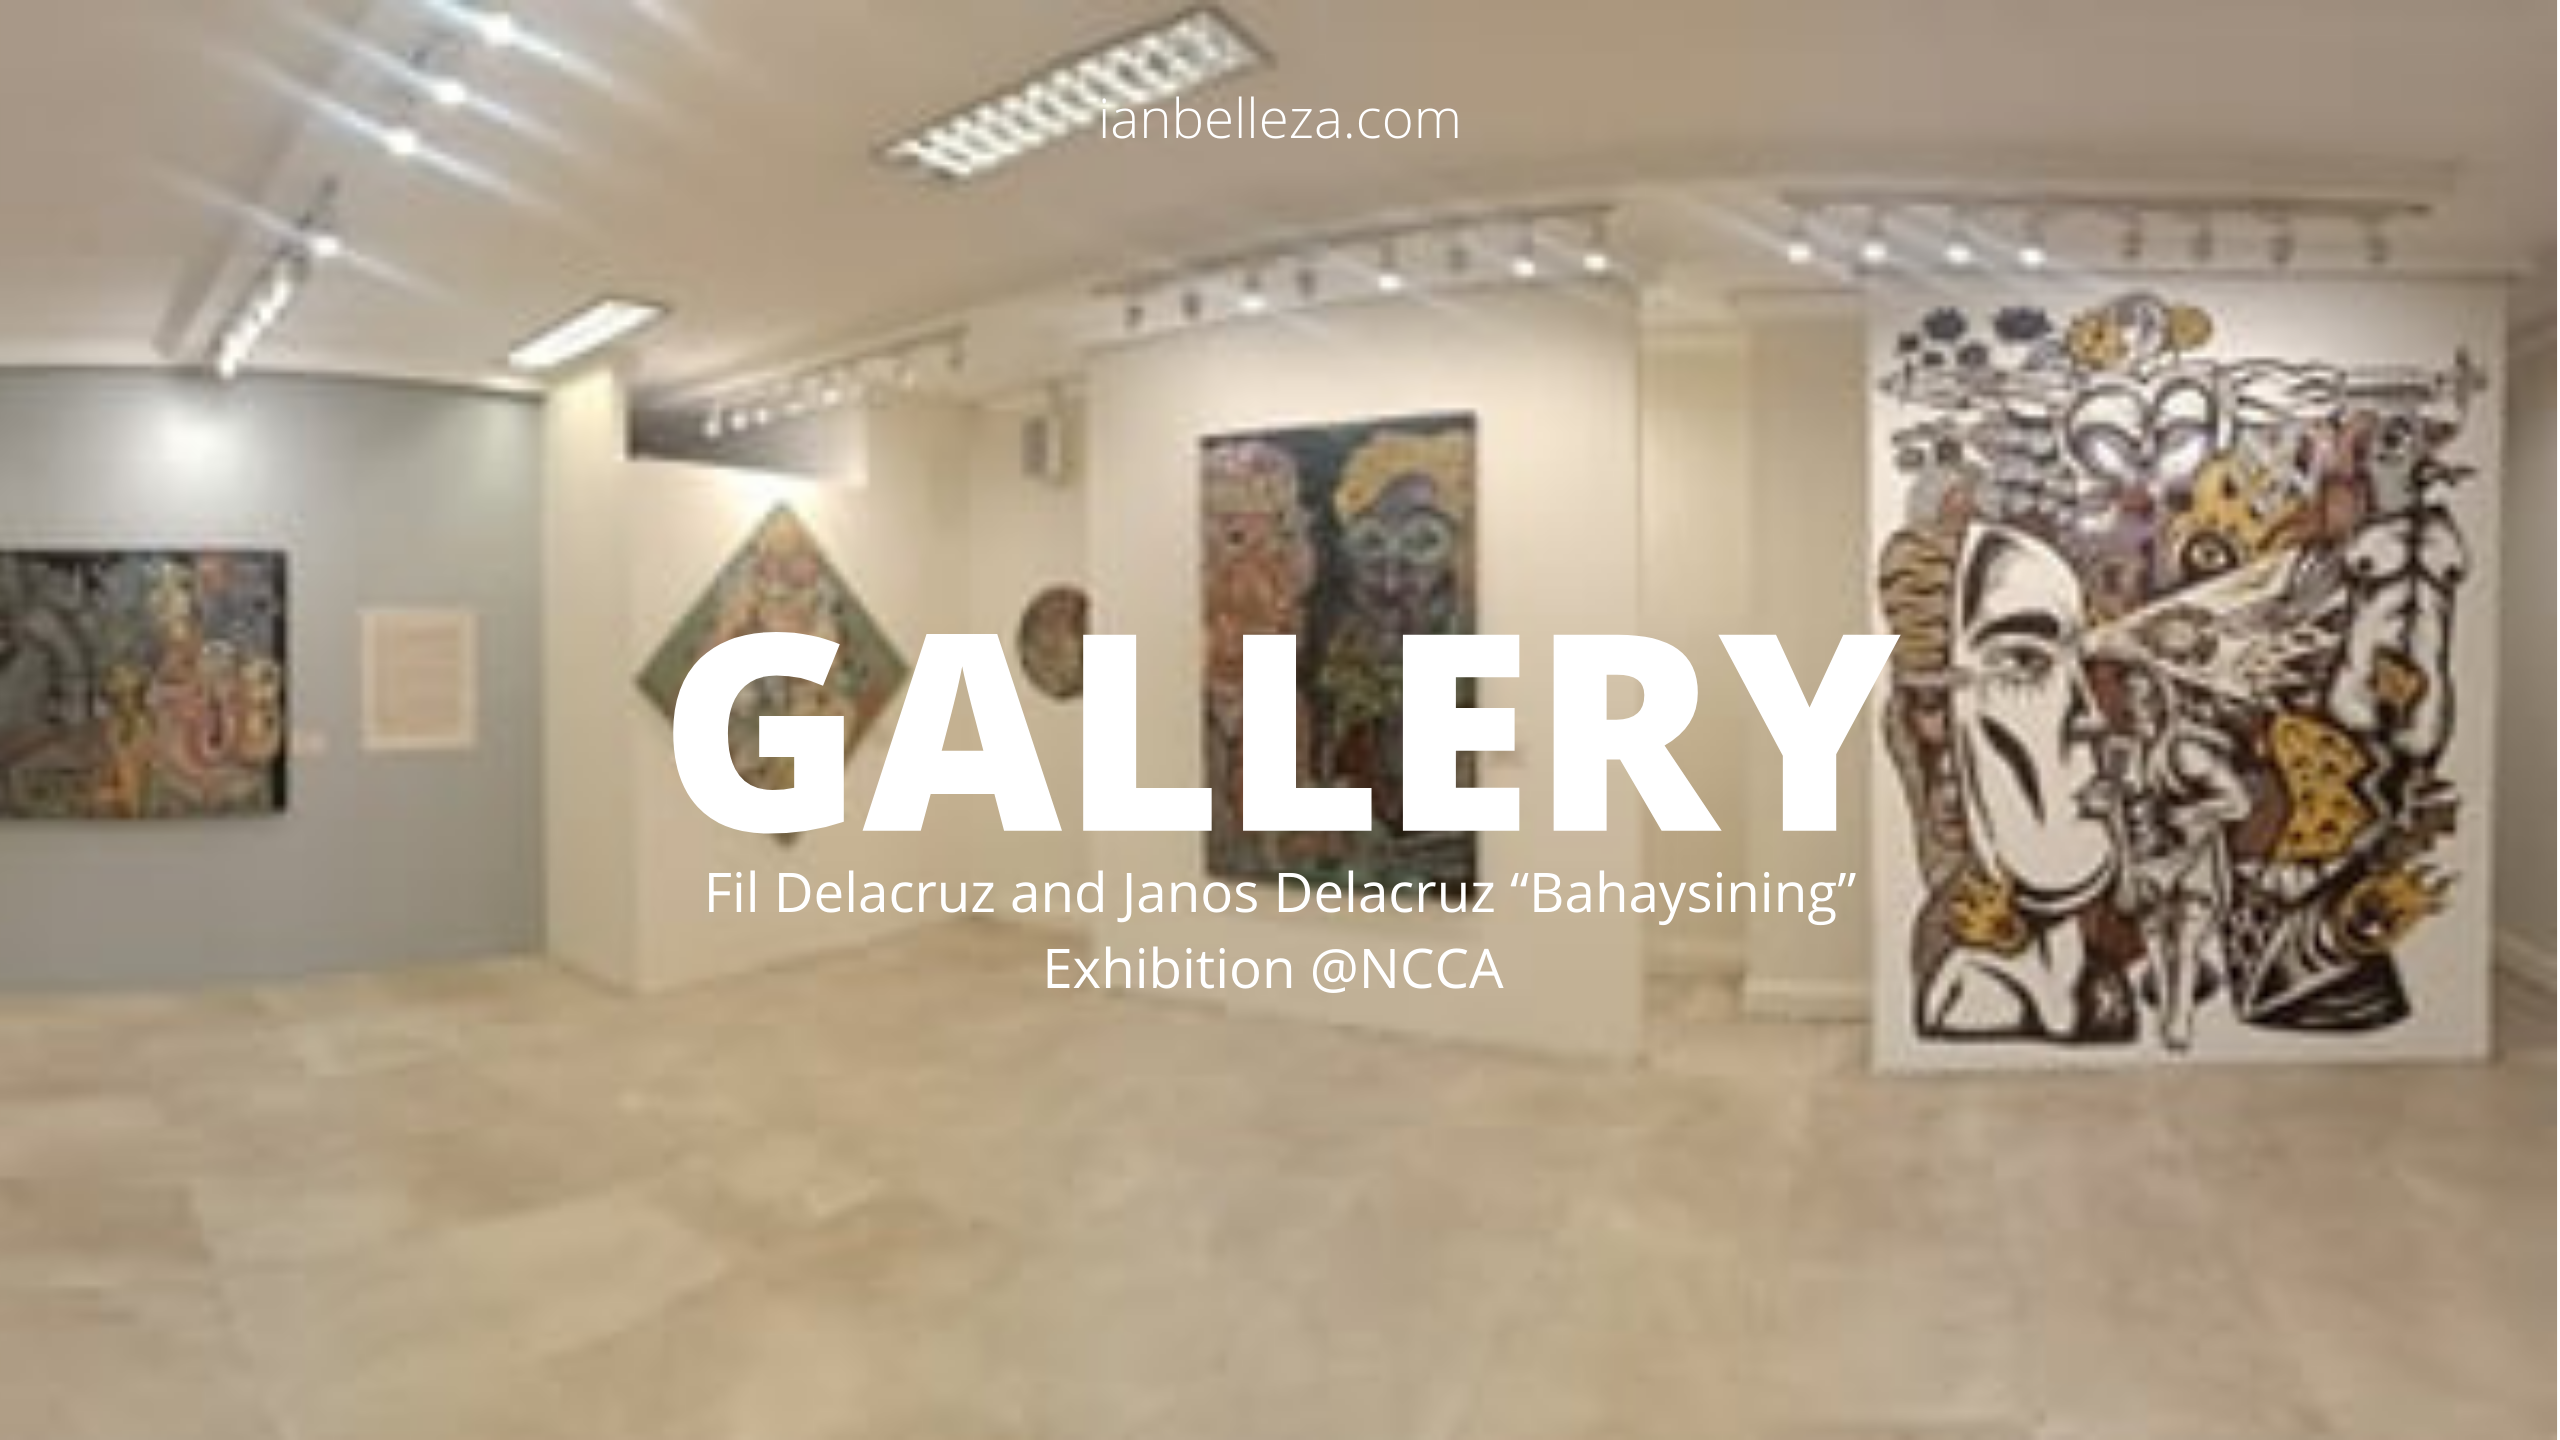 Gallery: Fil Delacruz and Janos Delacruz “Bahaysining” exhibition @NCCA